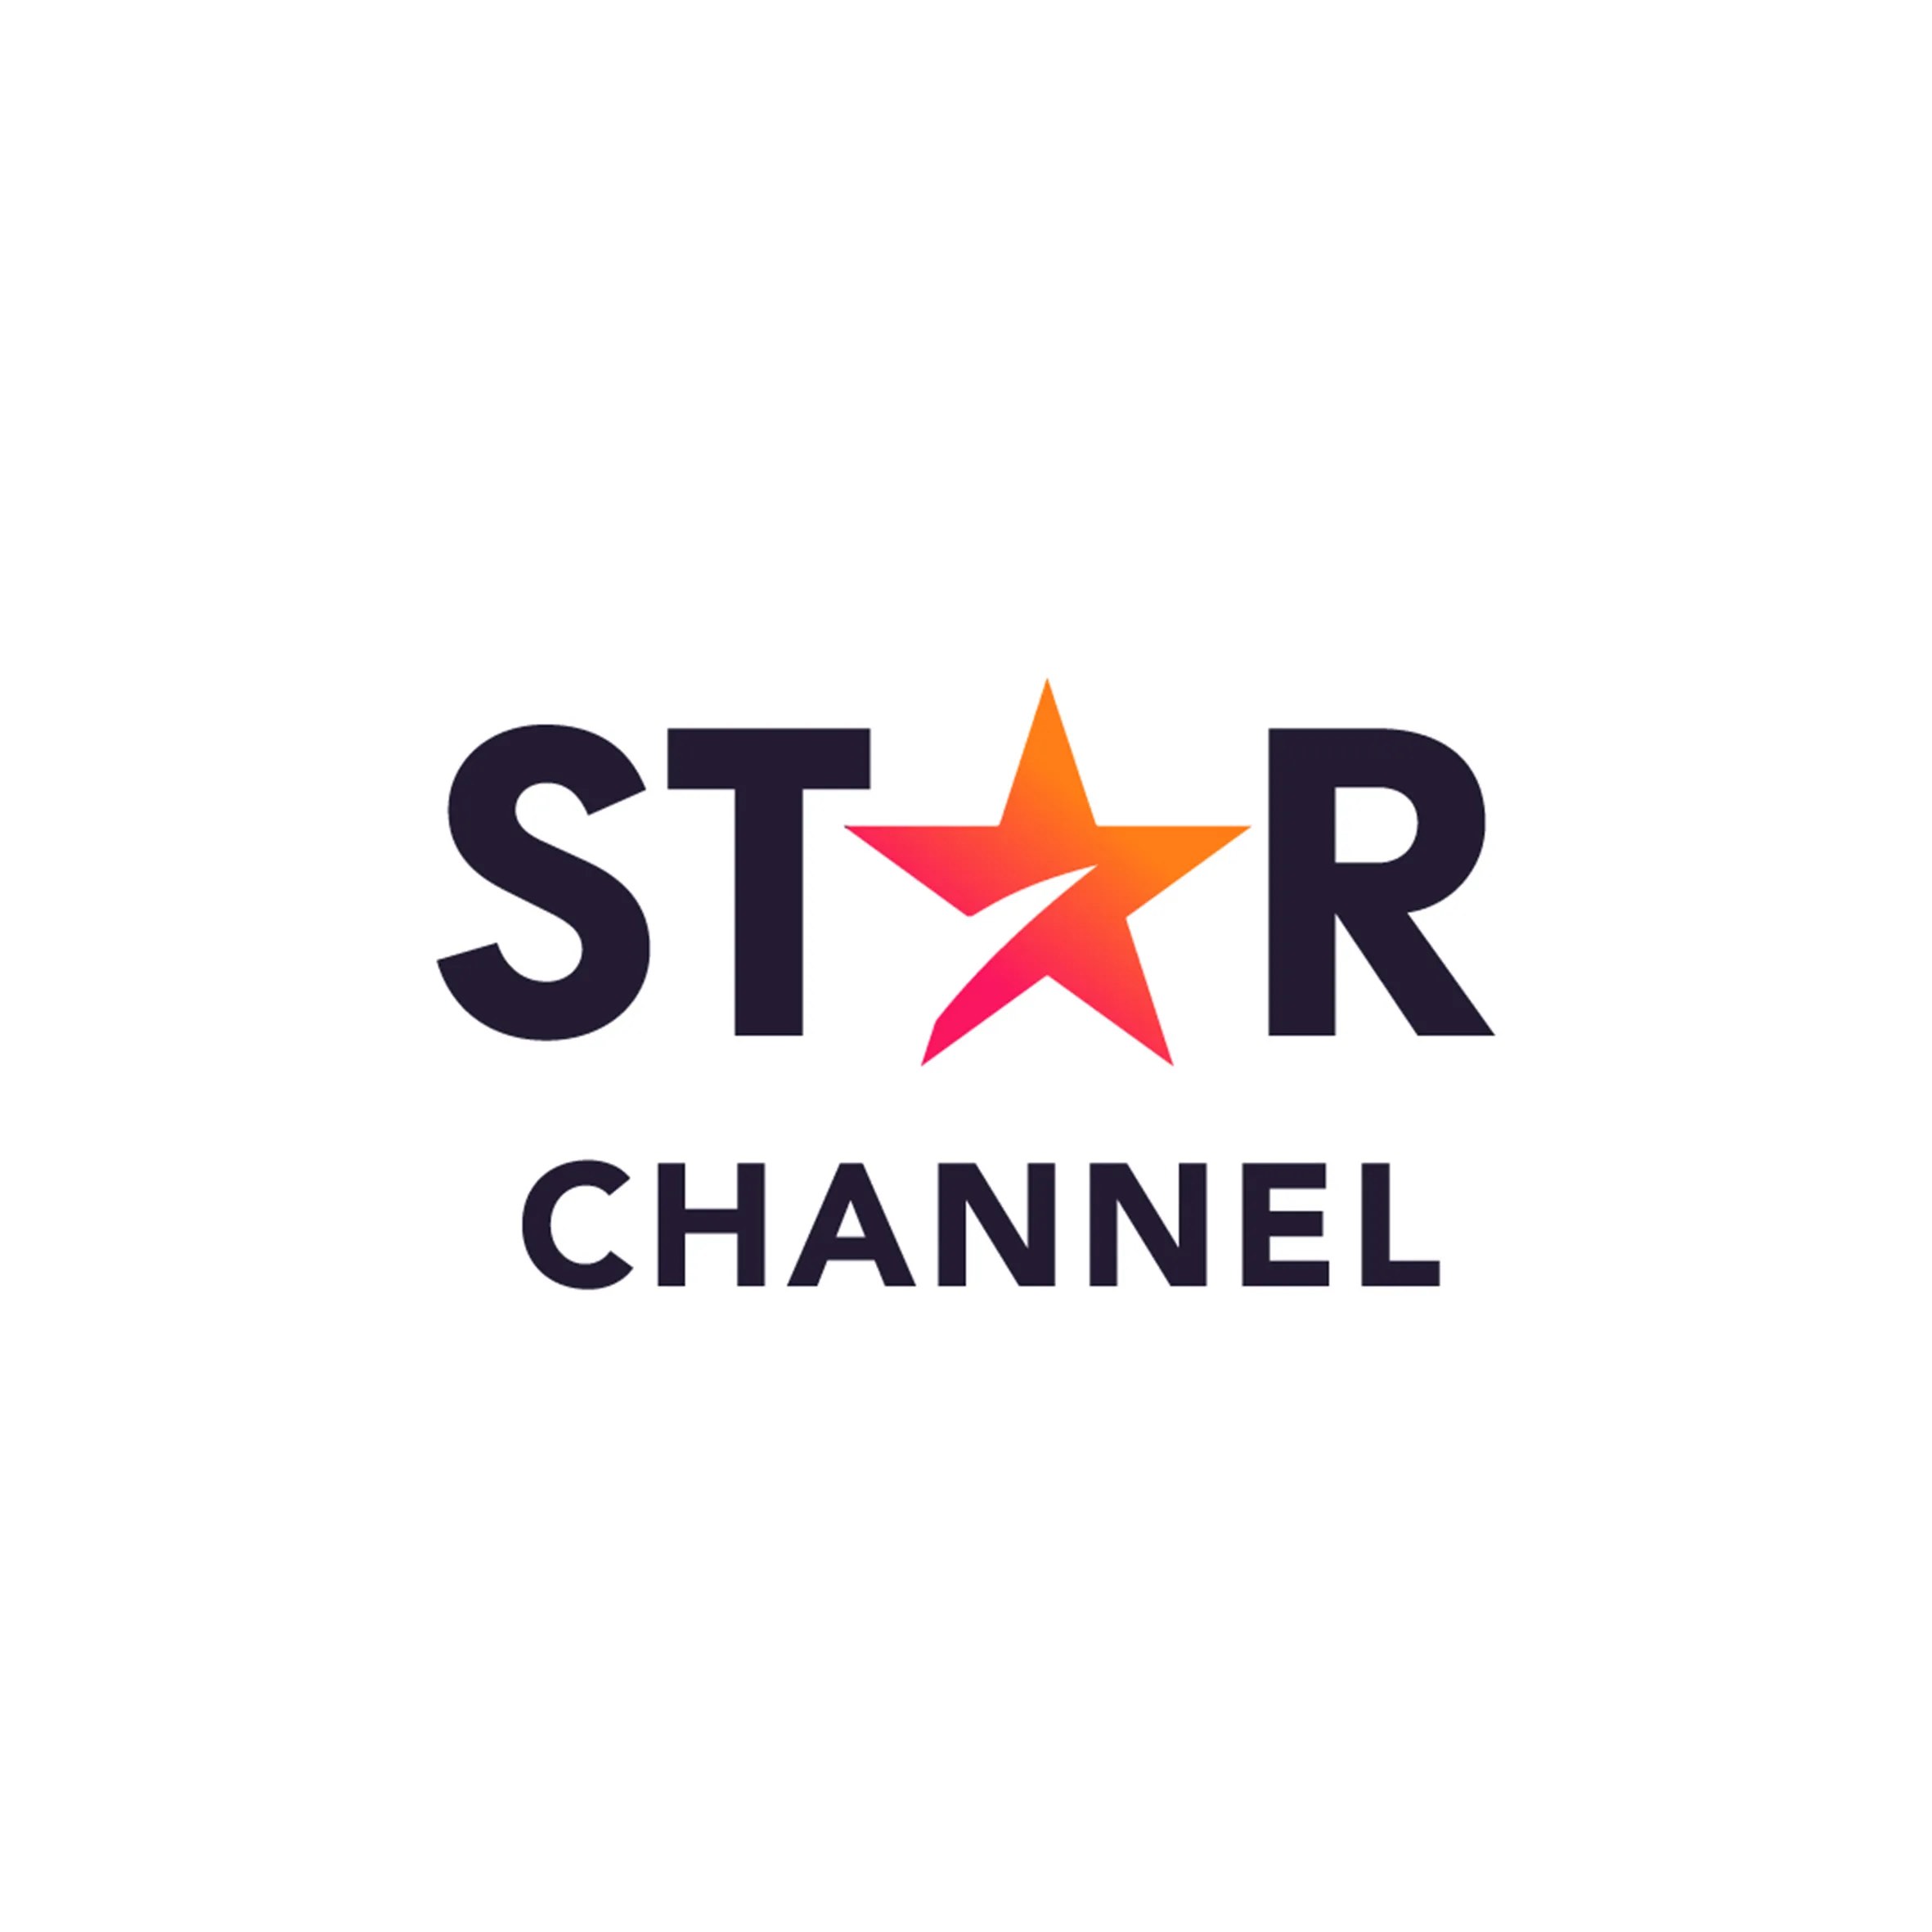 Imagem do Star Channel